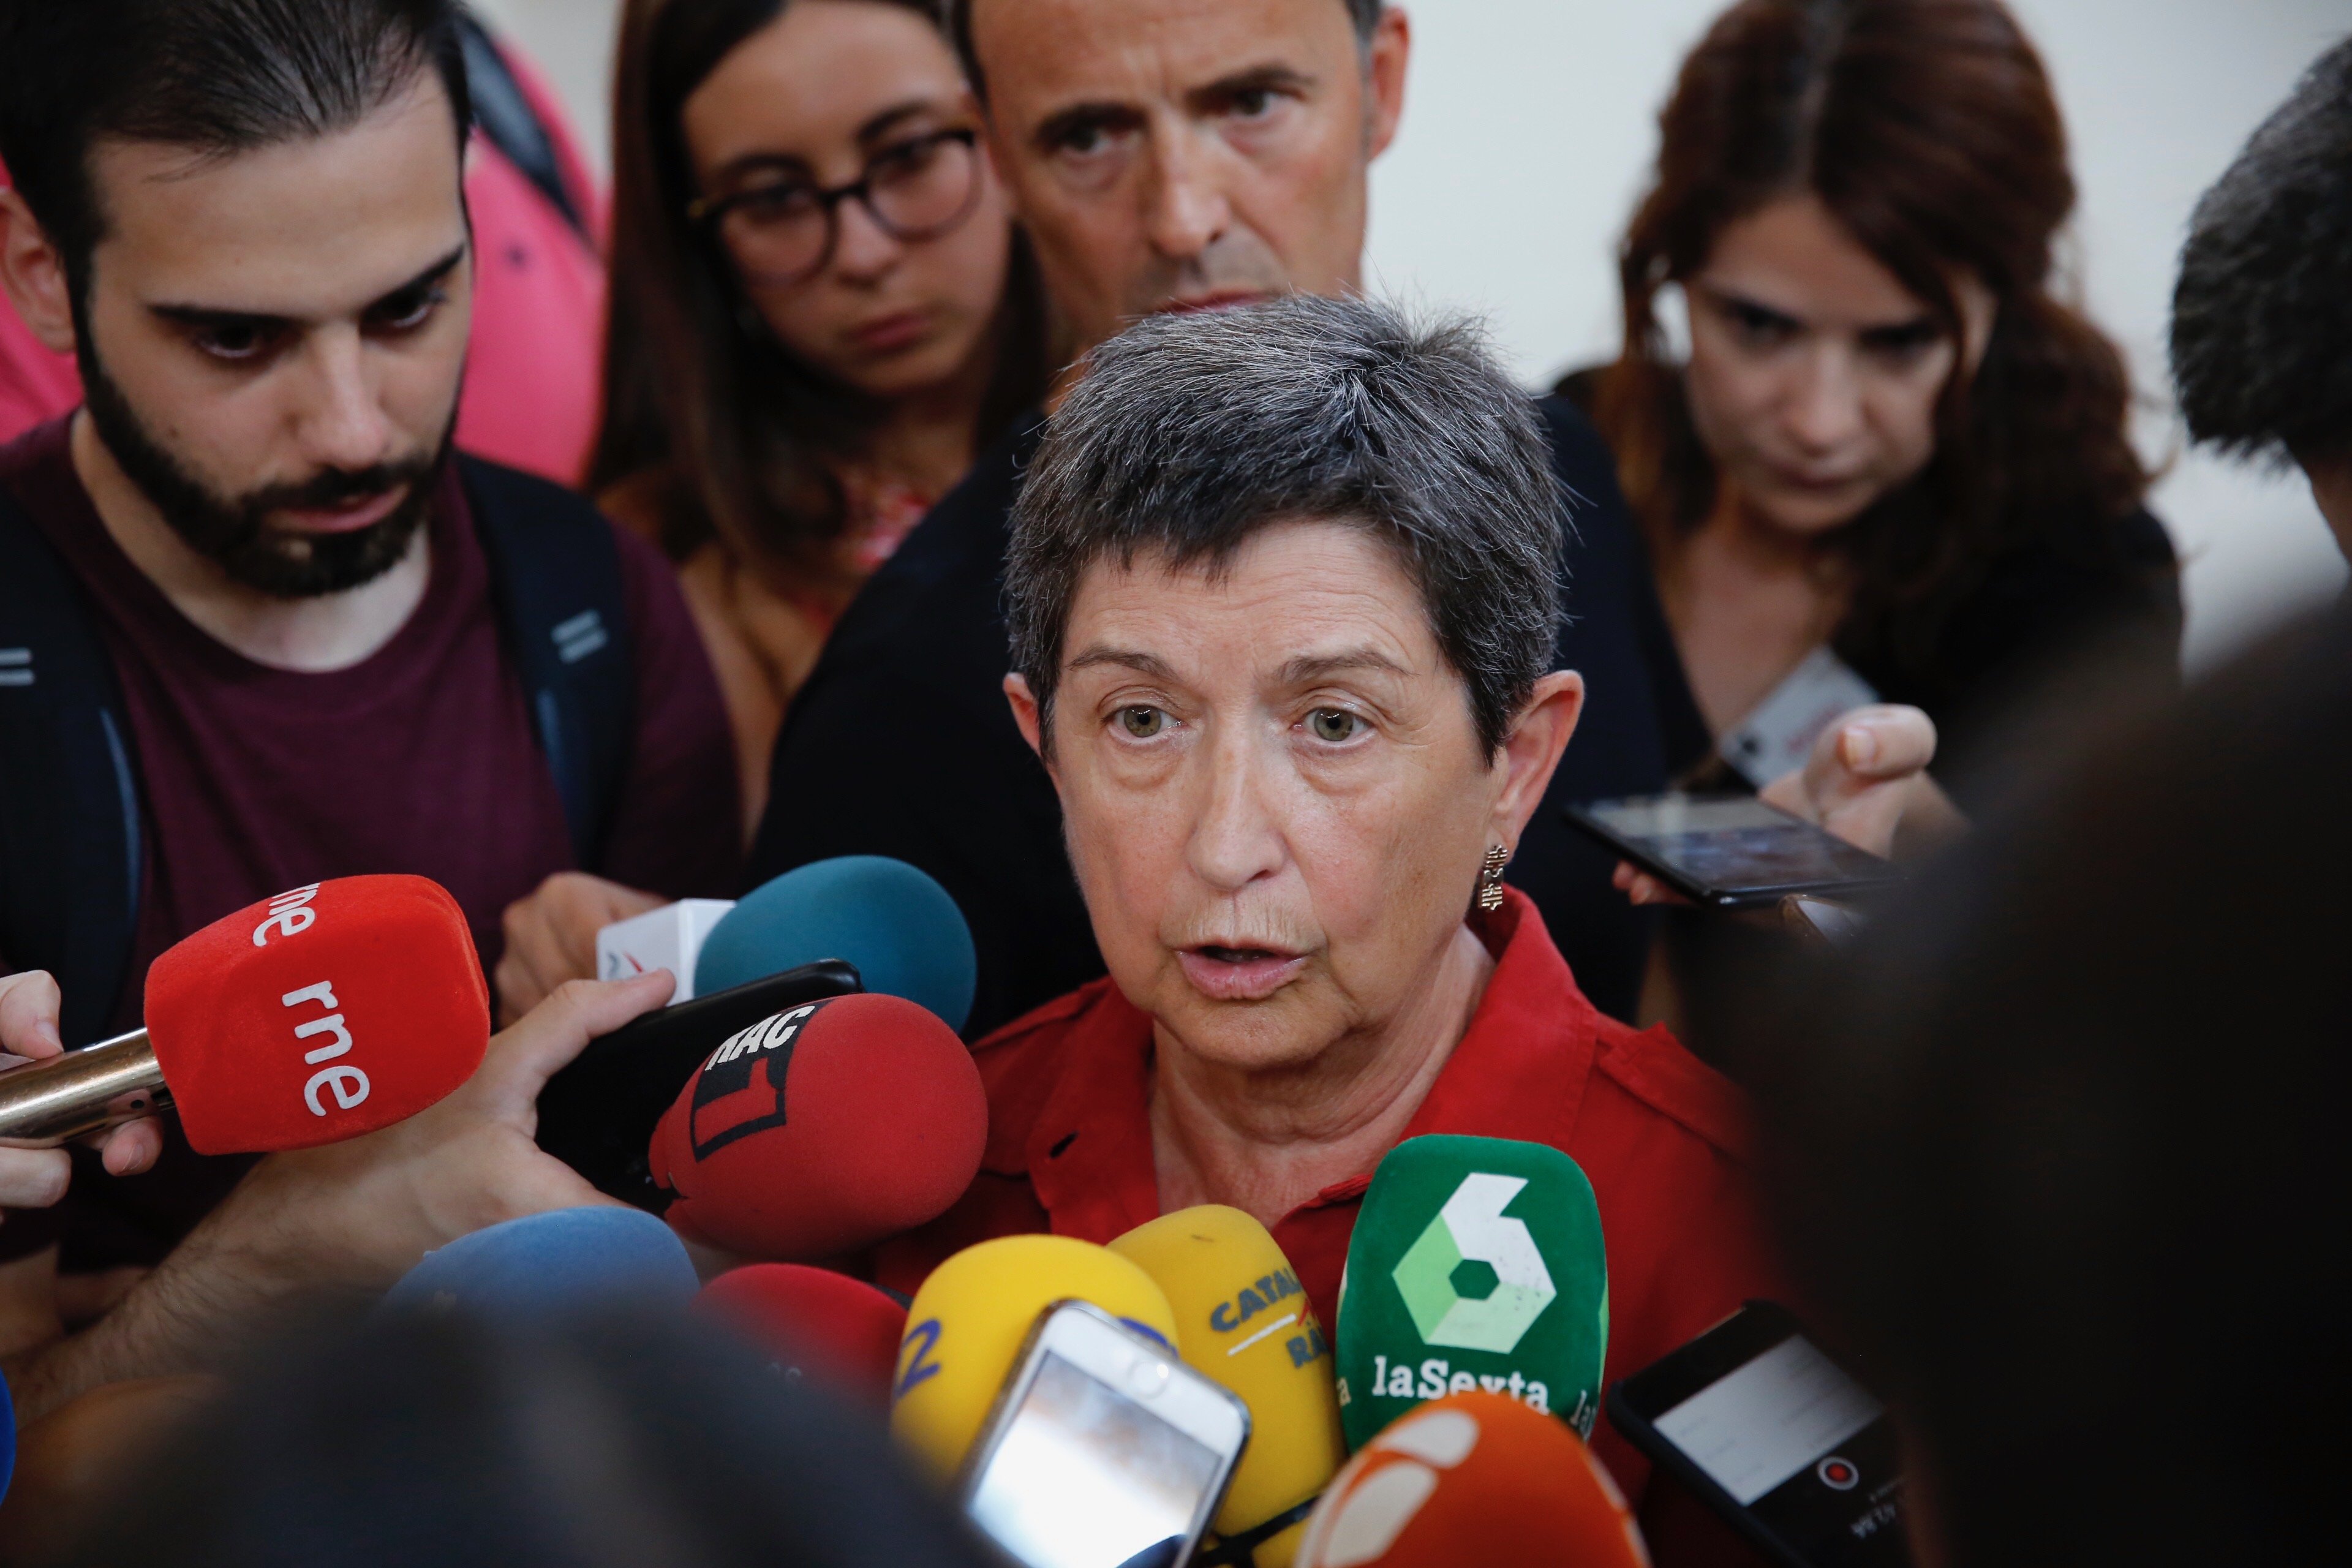 La delegada del gobierno español responderá a Torra "cuando vuelva de vacaciones"